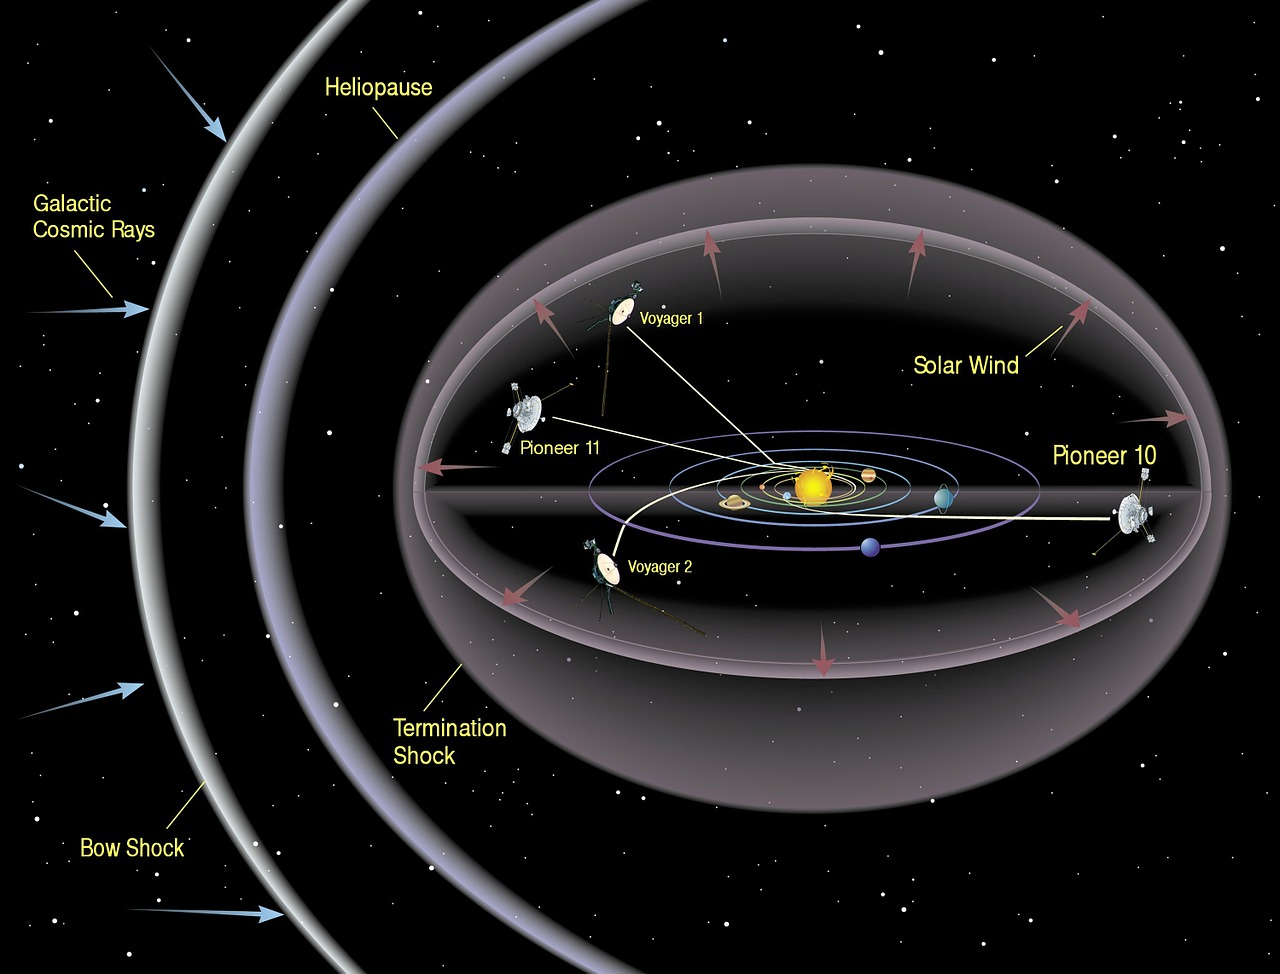 Descubriendo el destino del Voyager 2: ¿Dónde está hoy en día?